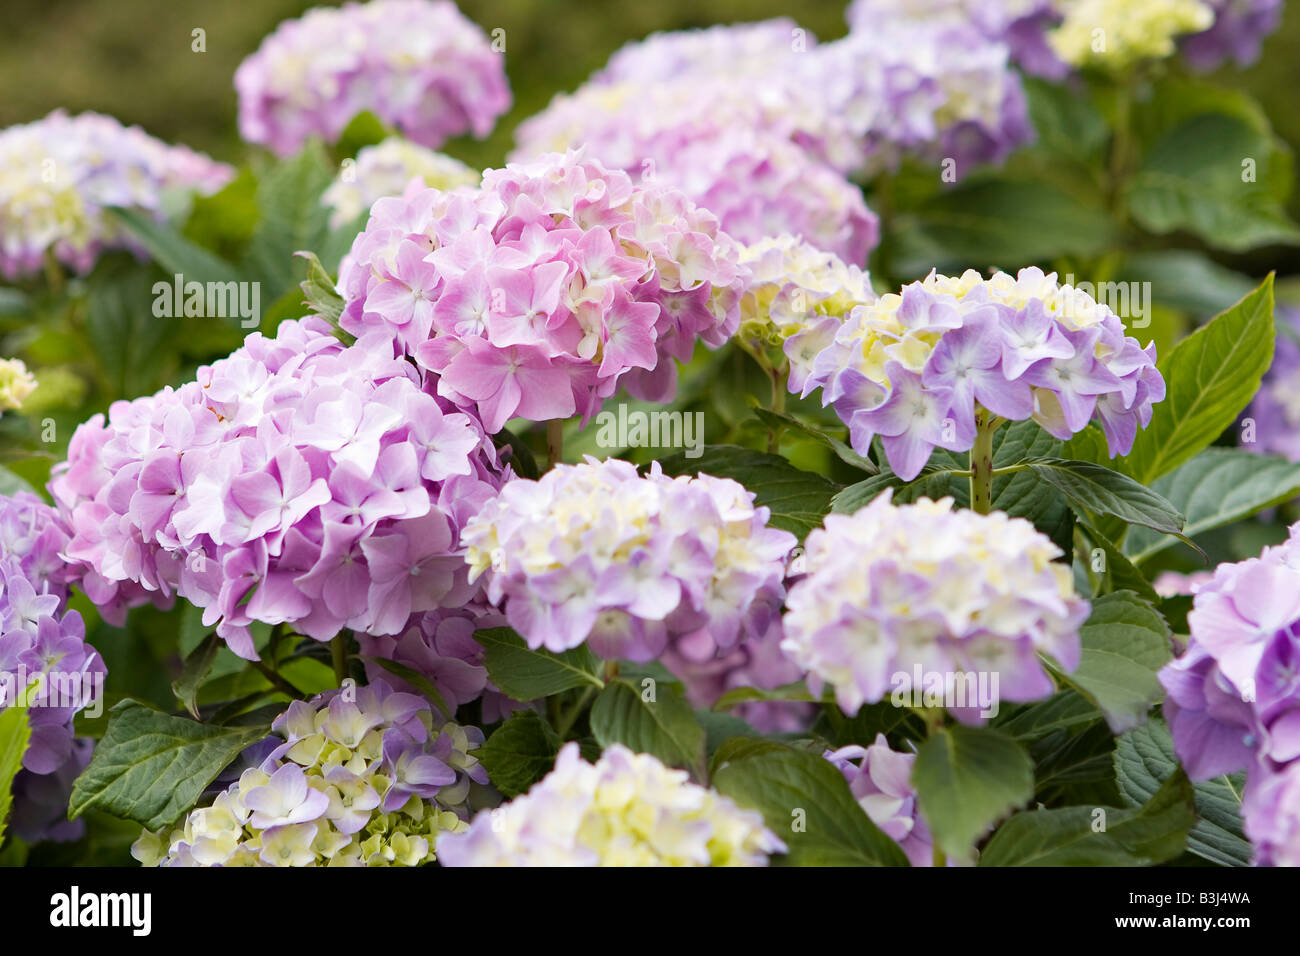 Mauve and lemon colour Hydrangea flowers Stock Photo